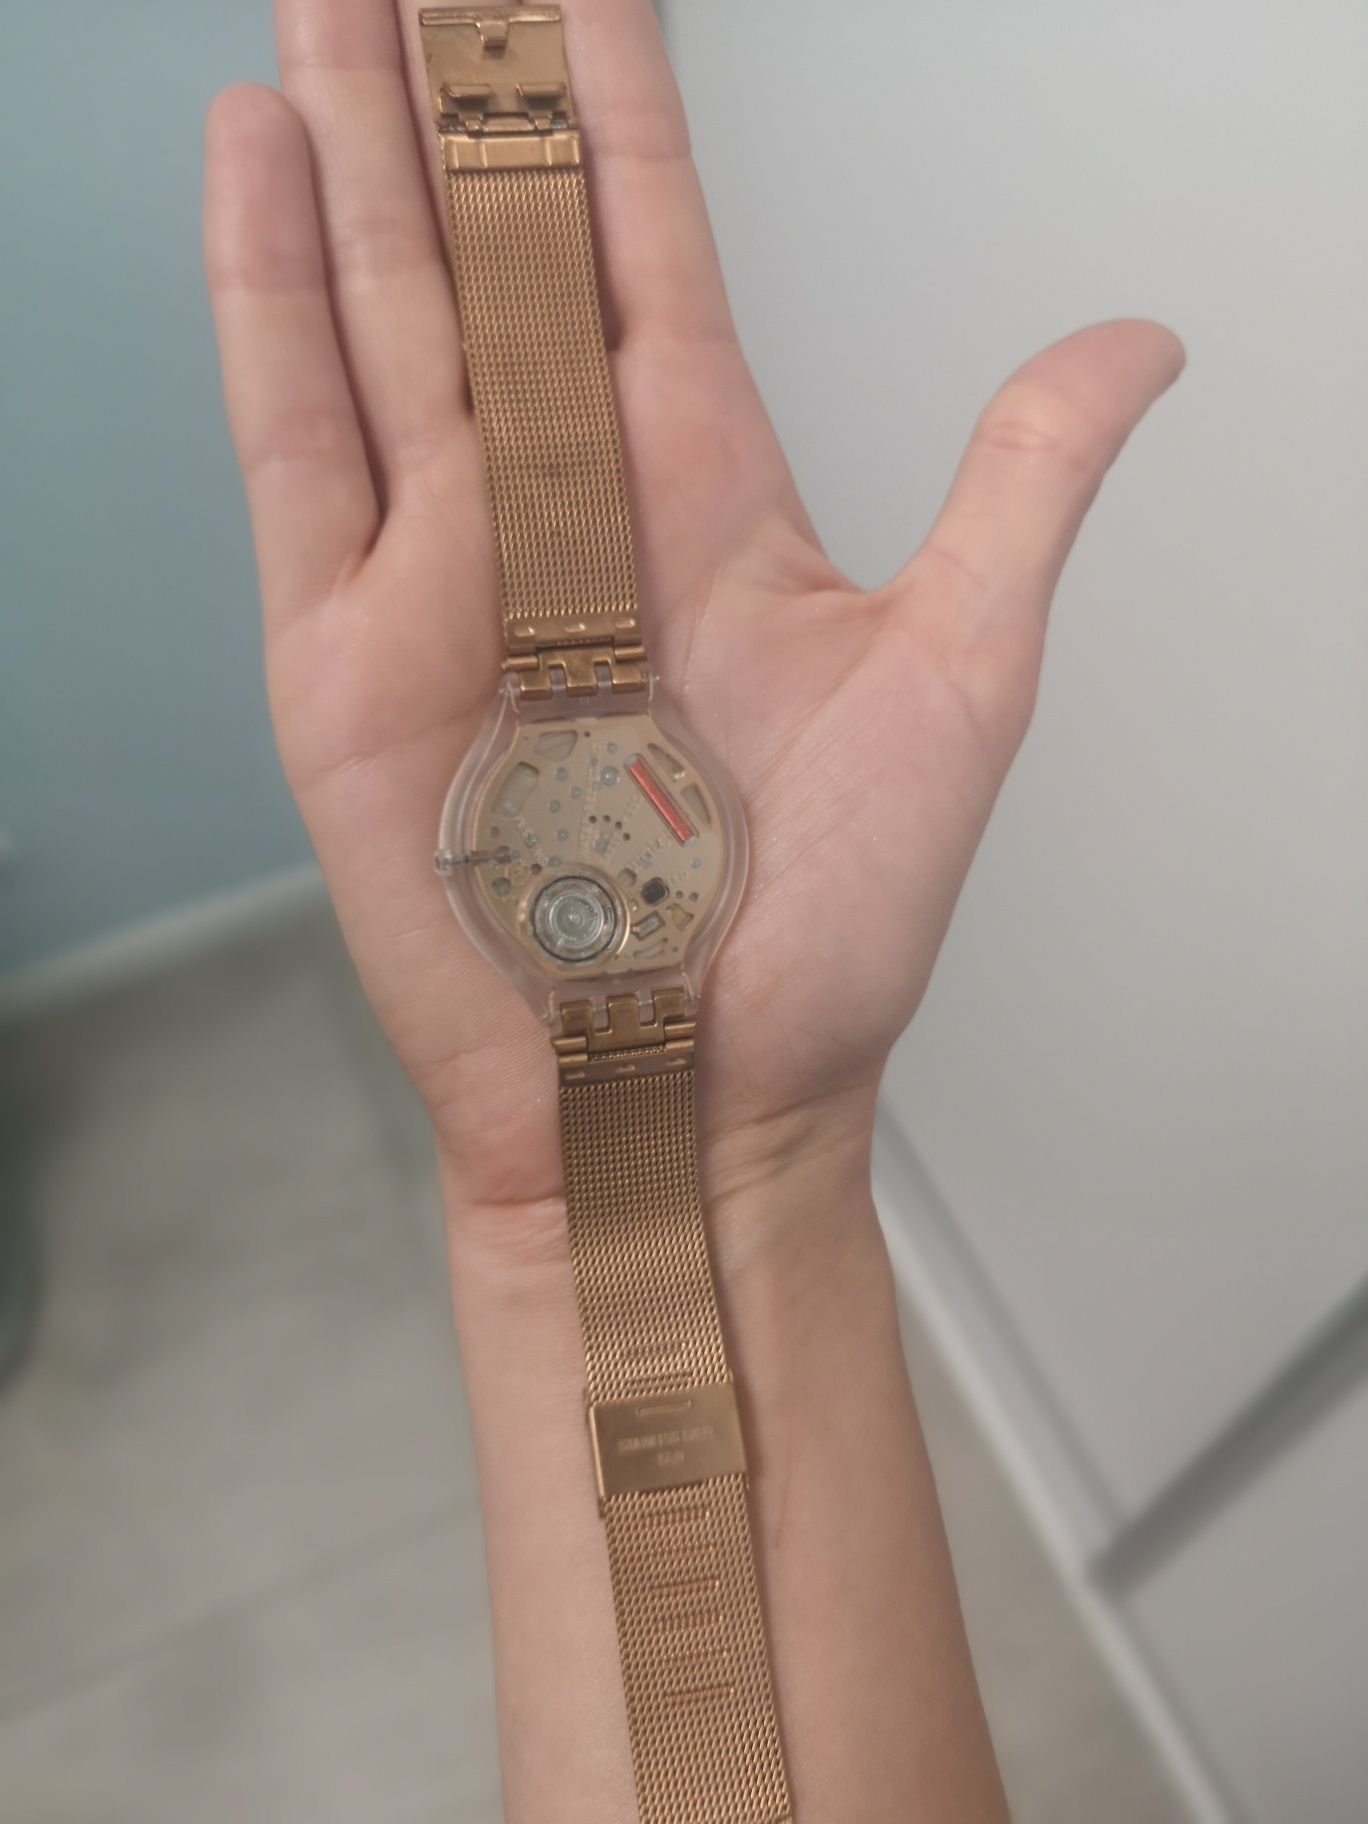 Zegarek swatch skin big stal miedziany różowe zloto